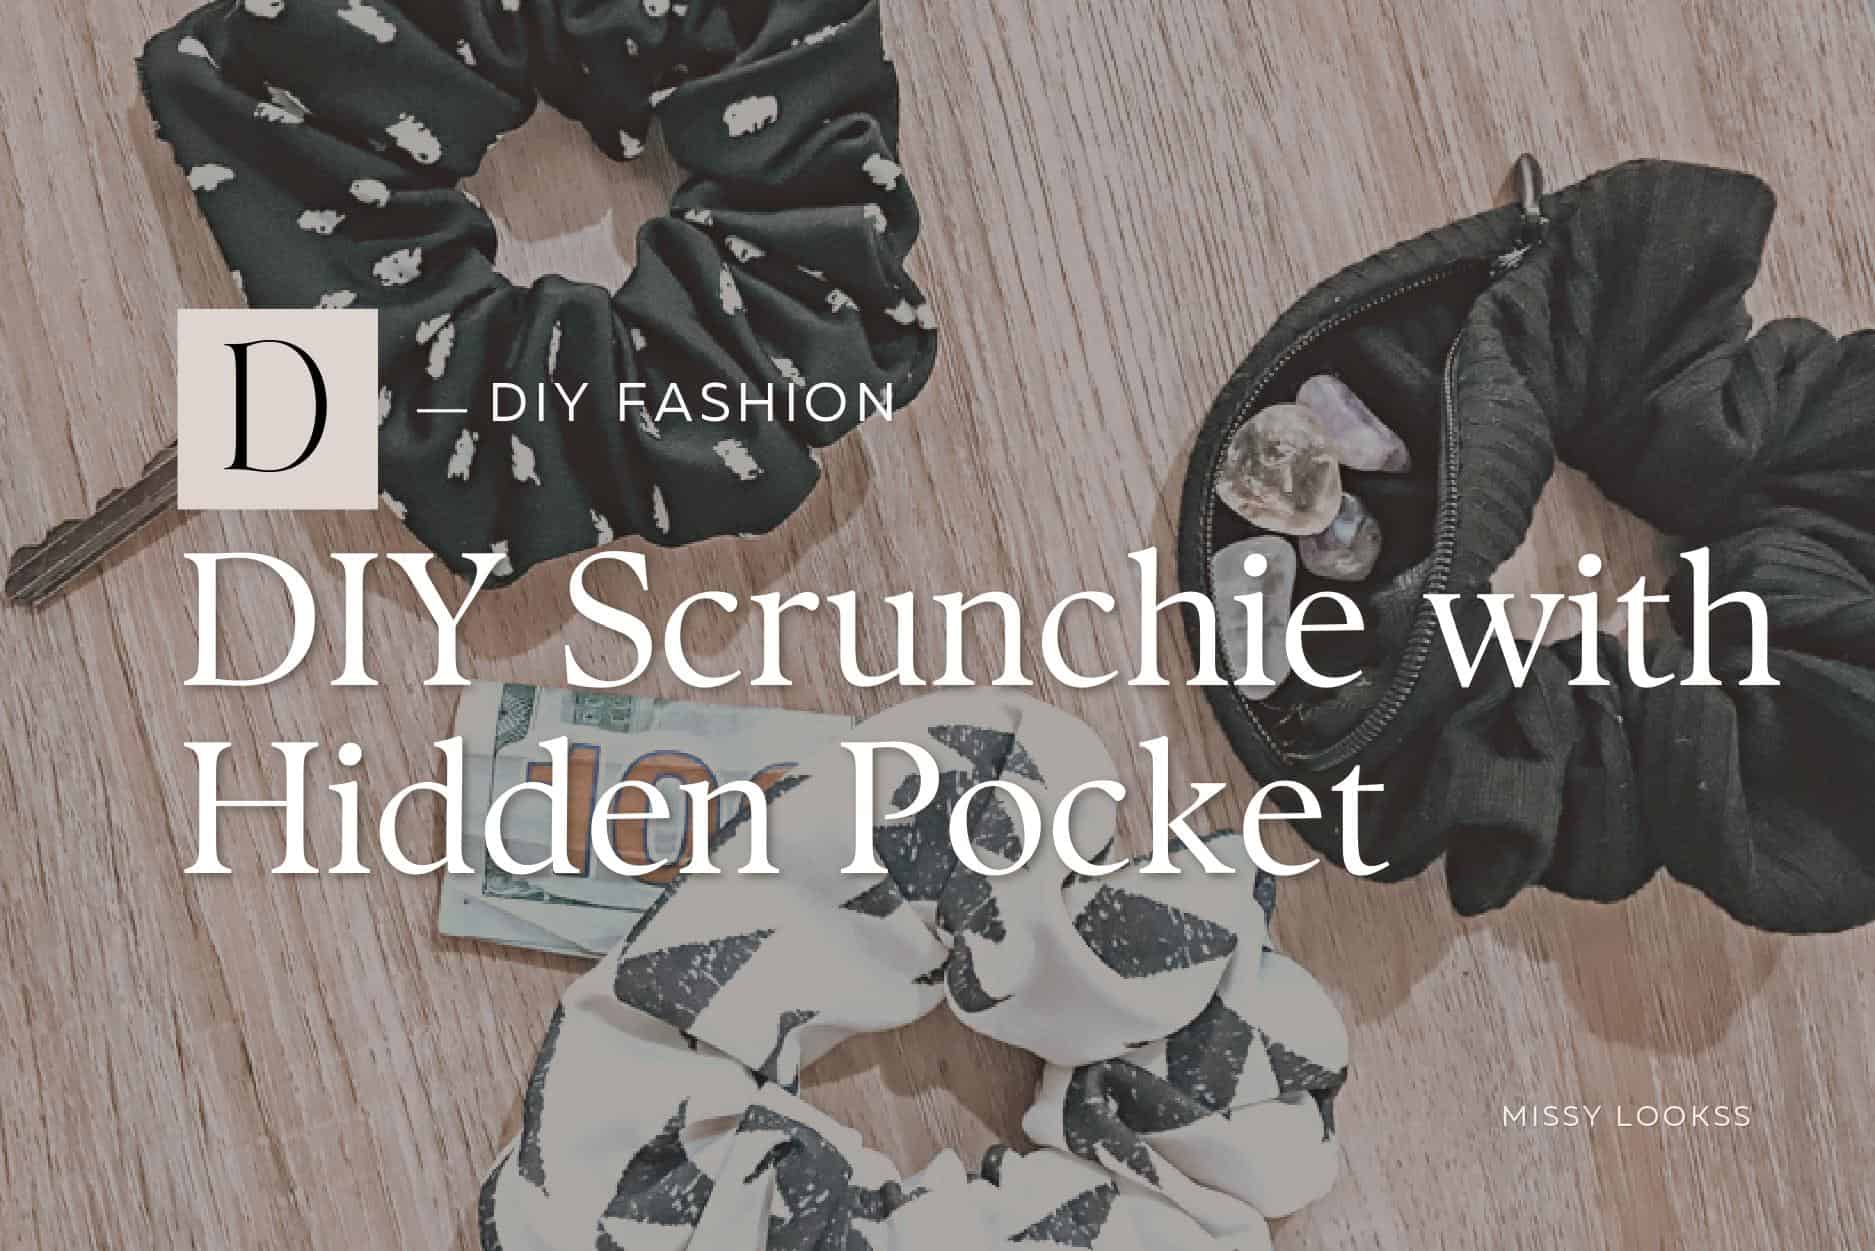 diy scrunchie with hidden pocket tutorial